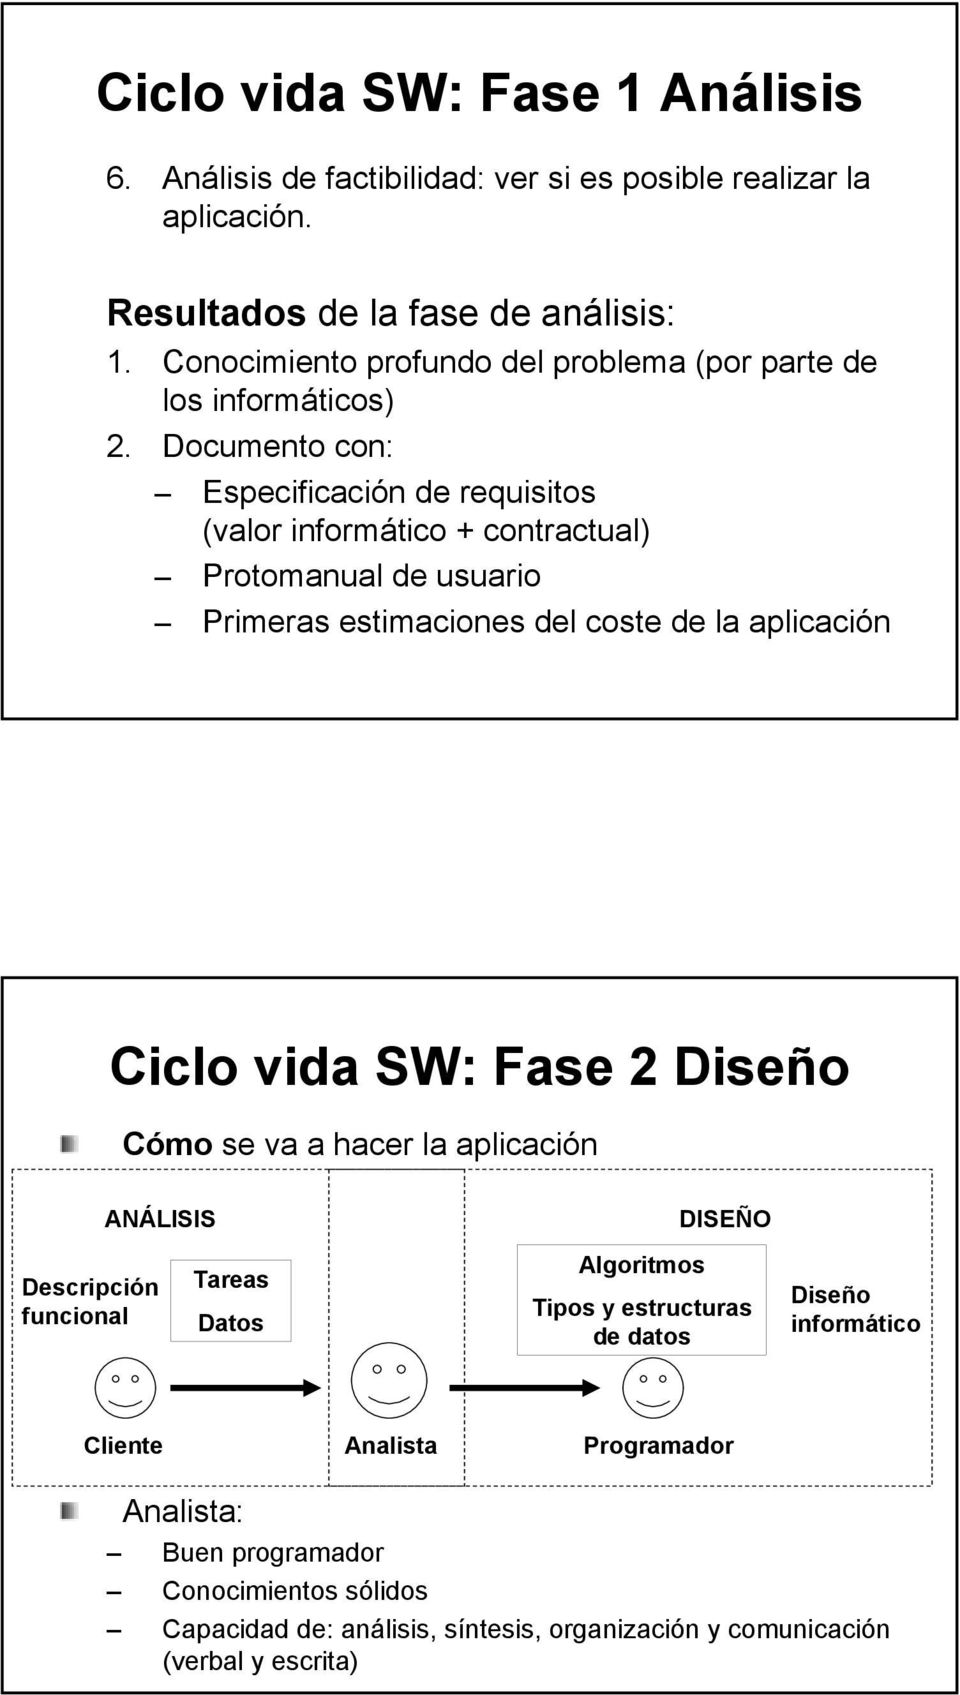 Documento con: Especificación de requisitos (valor informático + contractual) Protomanual de usuario Primeras estimaciones del coste de la aplicación Ciclo vida SW: Fase 2